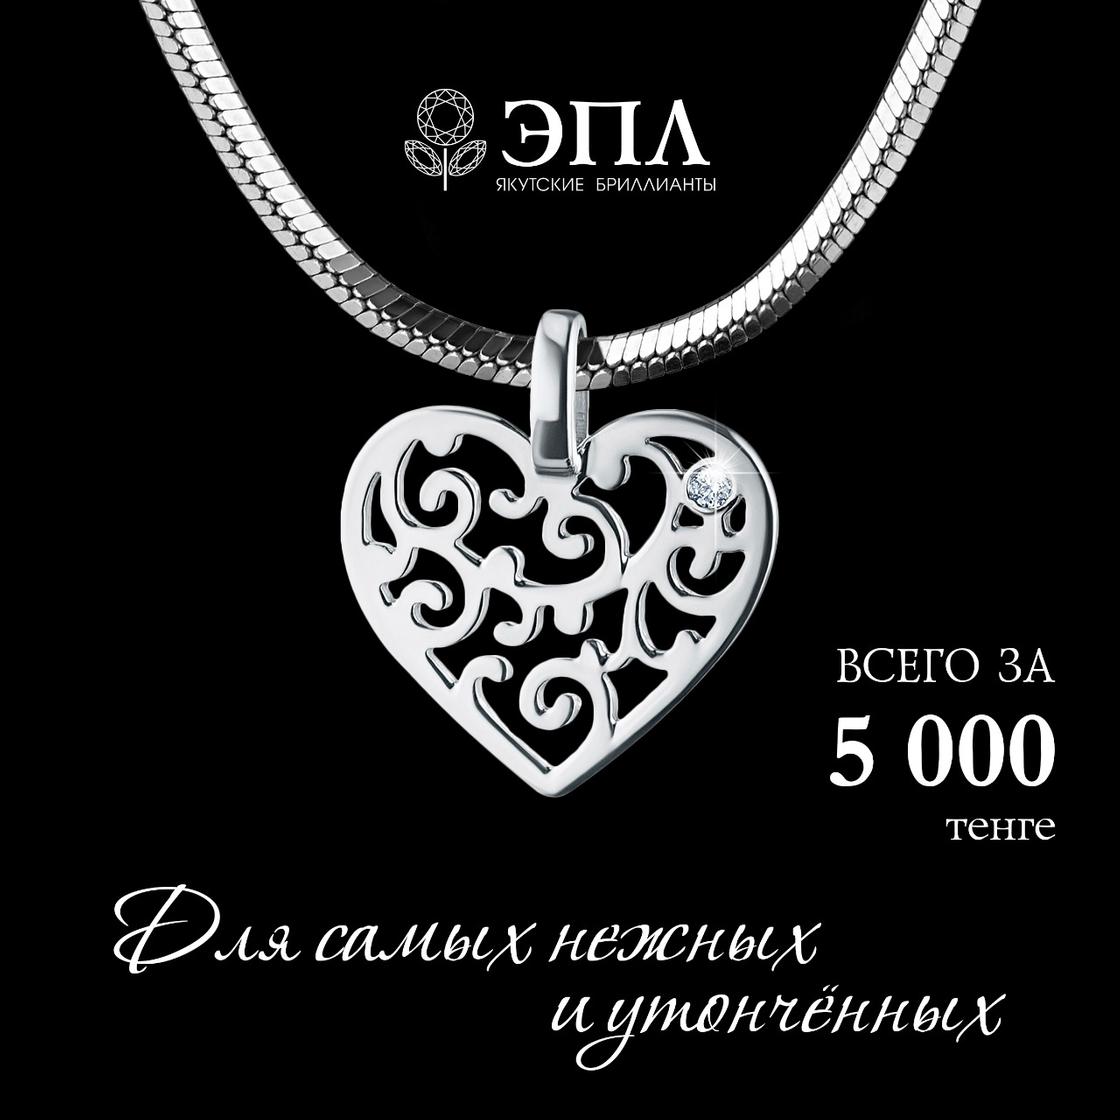 Бриллианты за 5 тыс. тенге предложили казахстанцам